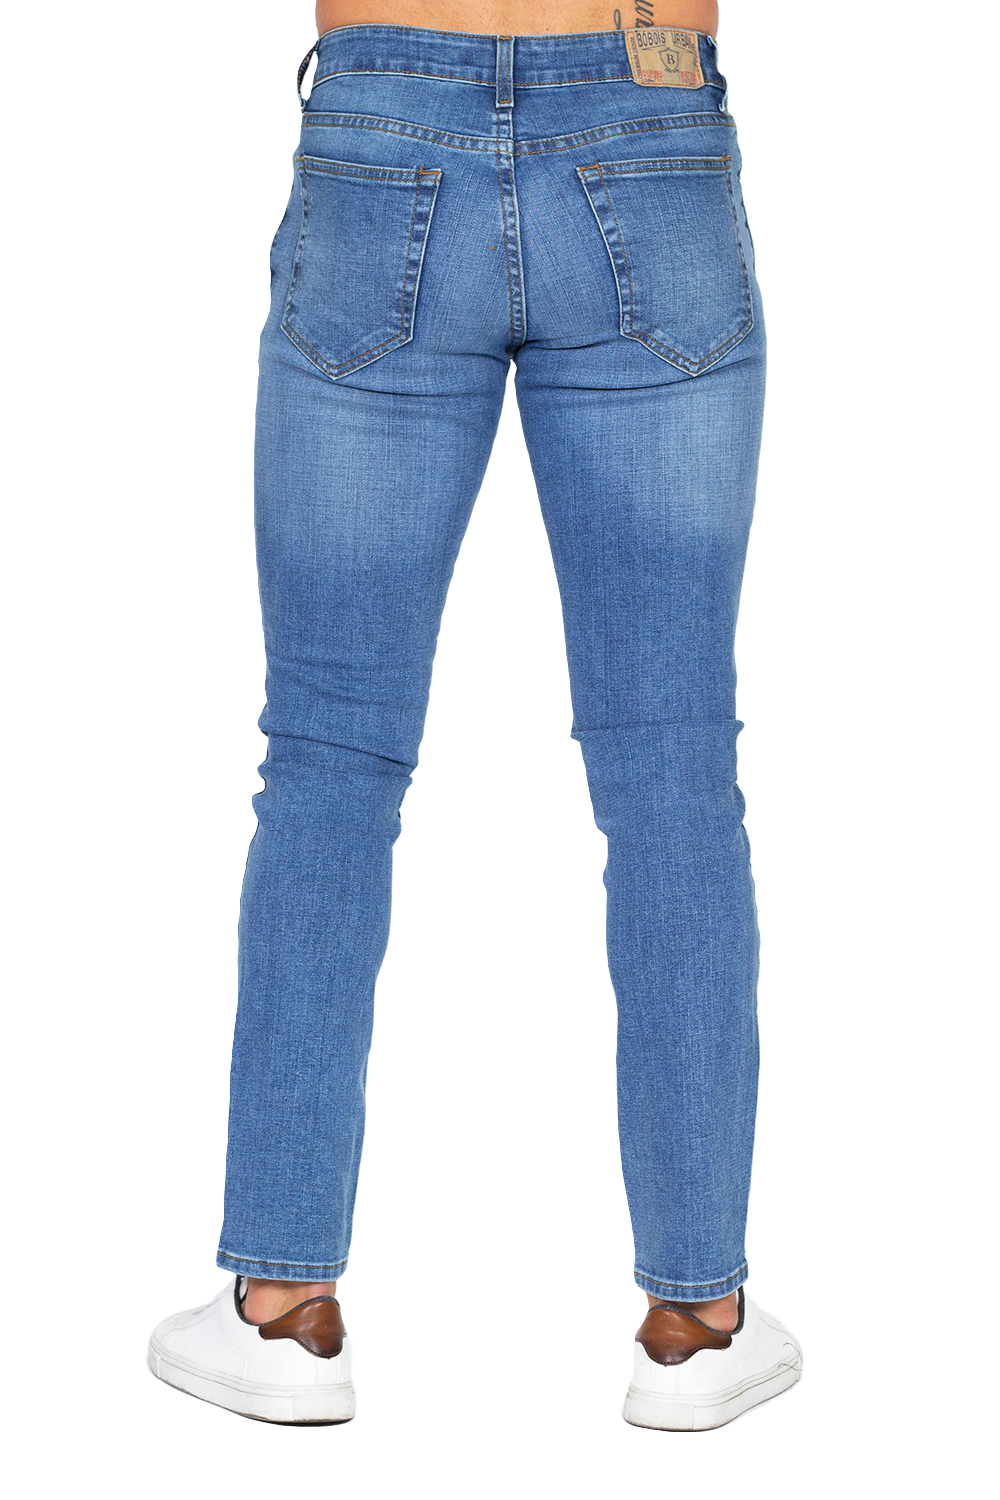 Jeans Para Hombre Bobois Casuales Corte Slim Pantalon De Mezclilla J31 –  BOBOIS